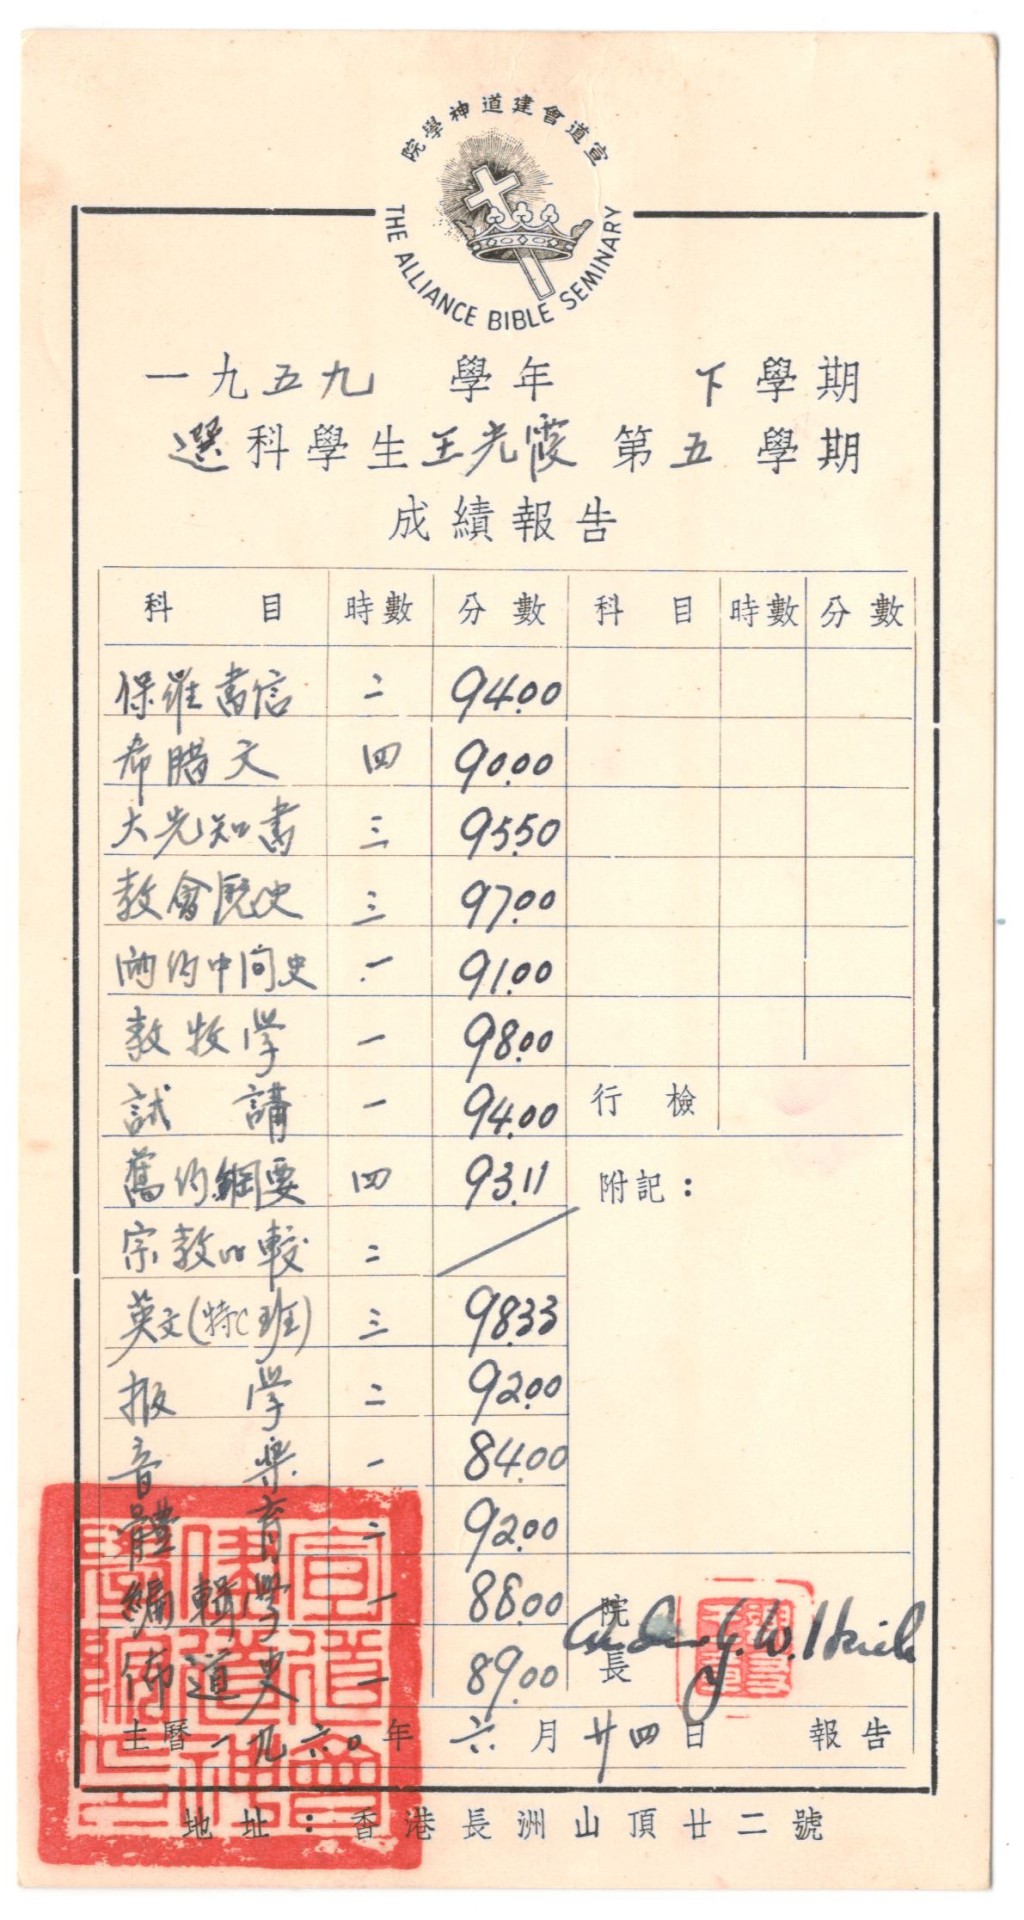 昔日調景嶺學校的學生成績表(資料來源：西貢民政事務處)